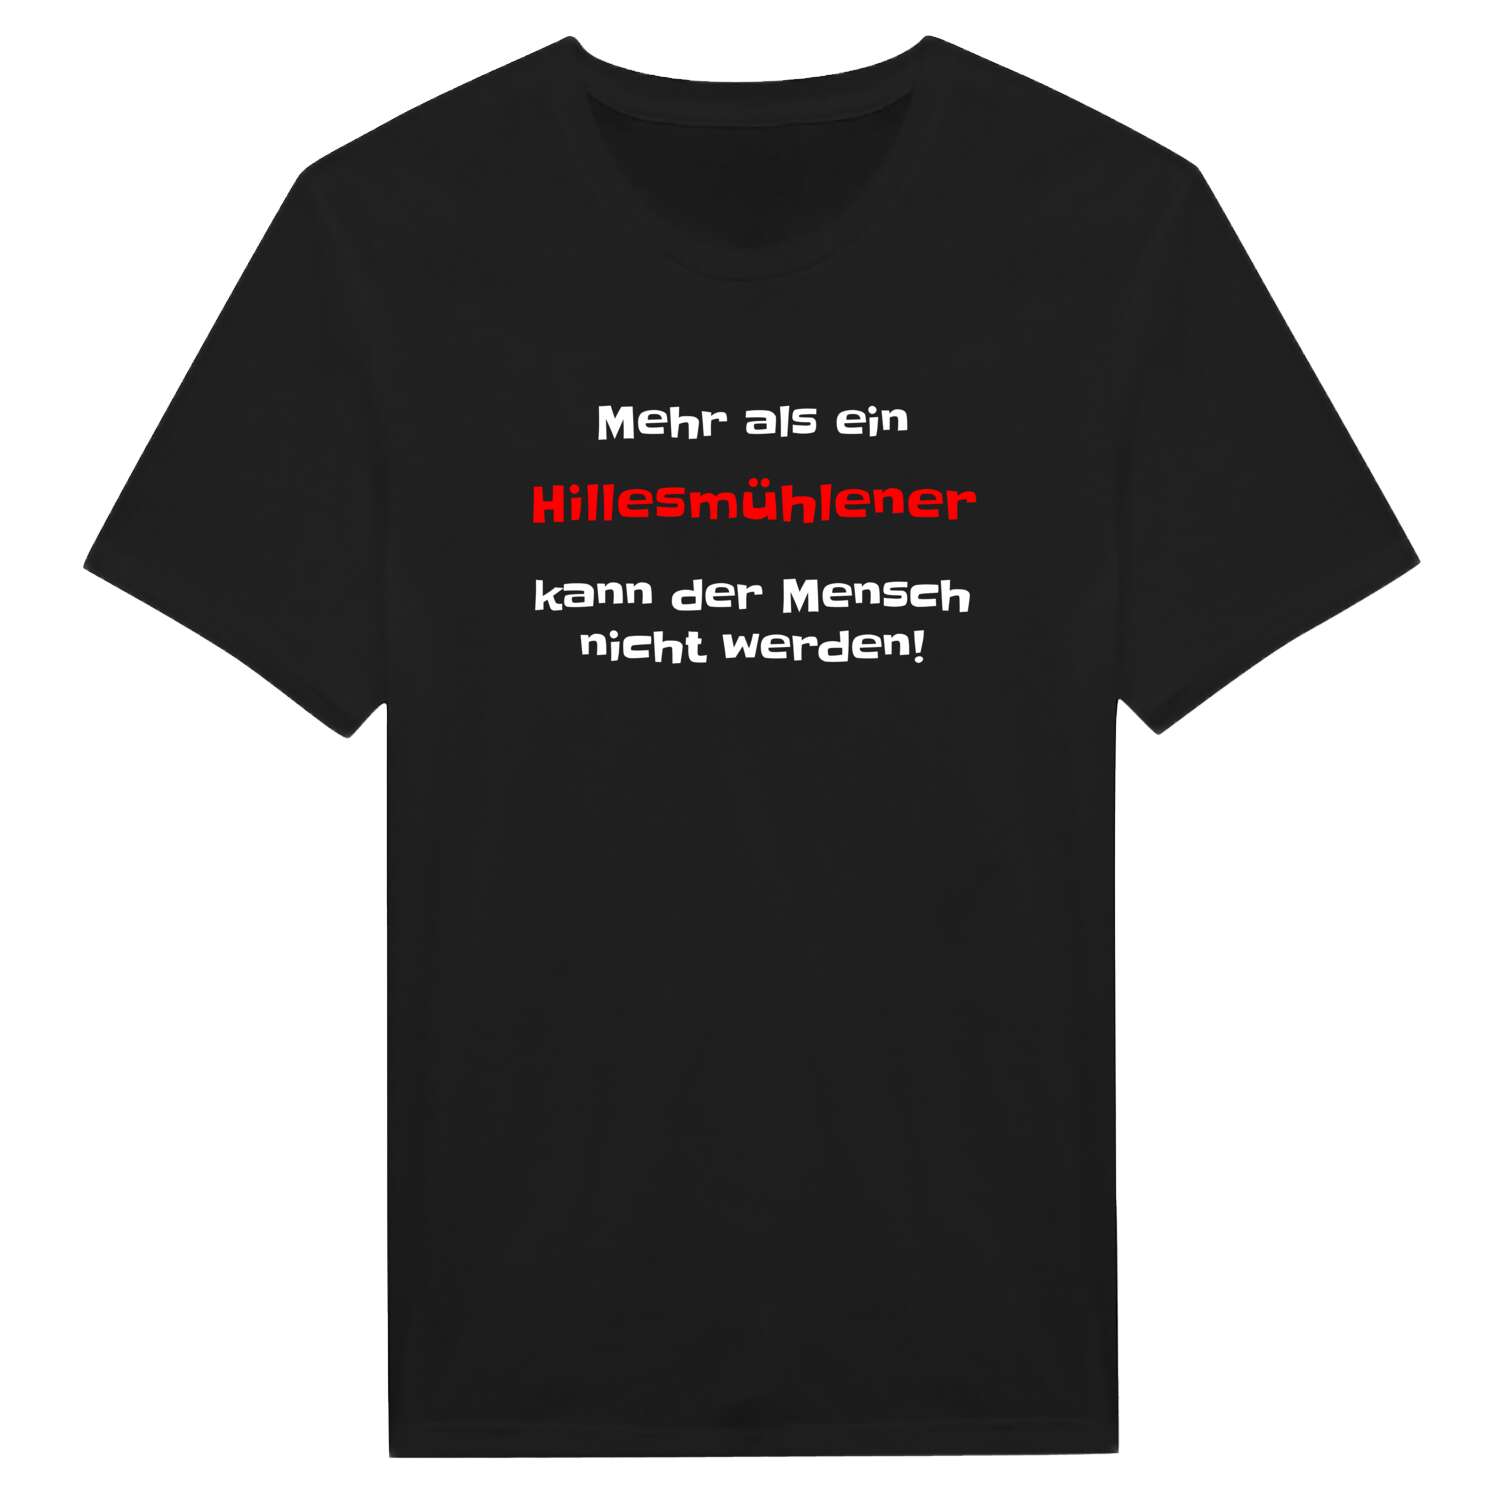 Hillesmühle T-Shirt »Mehr als ein«